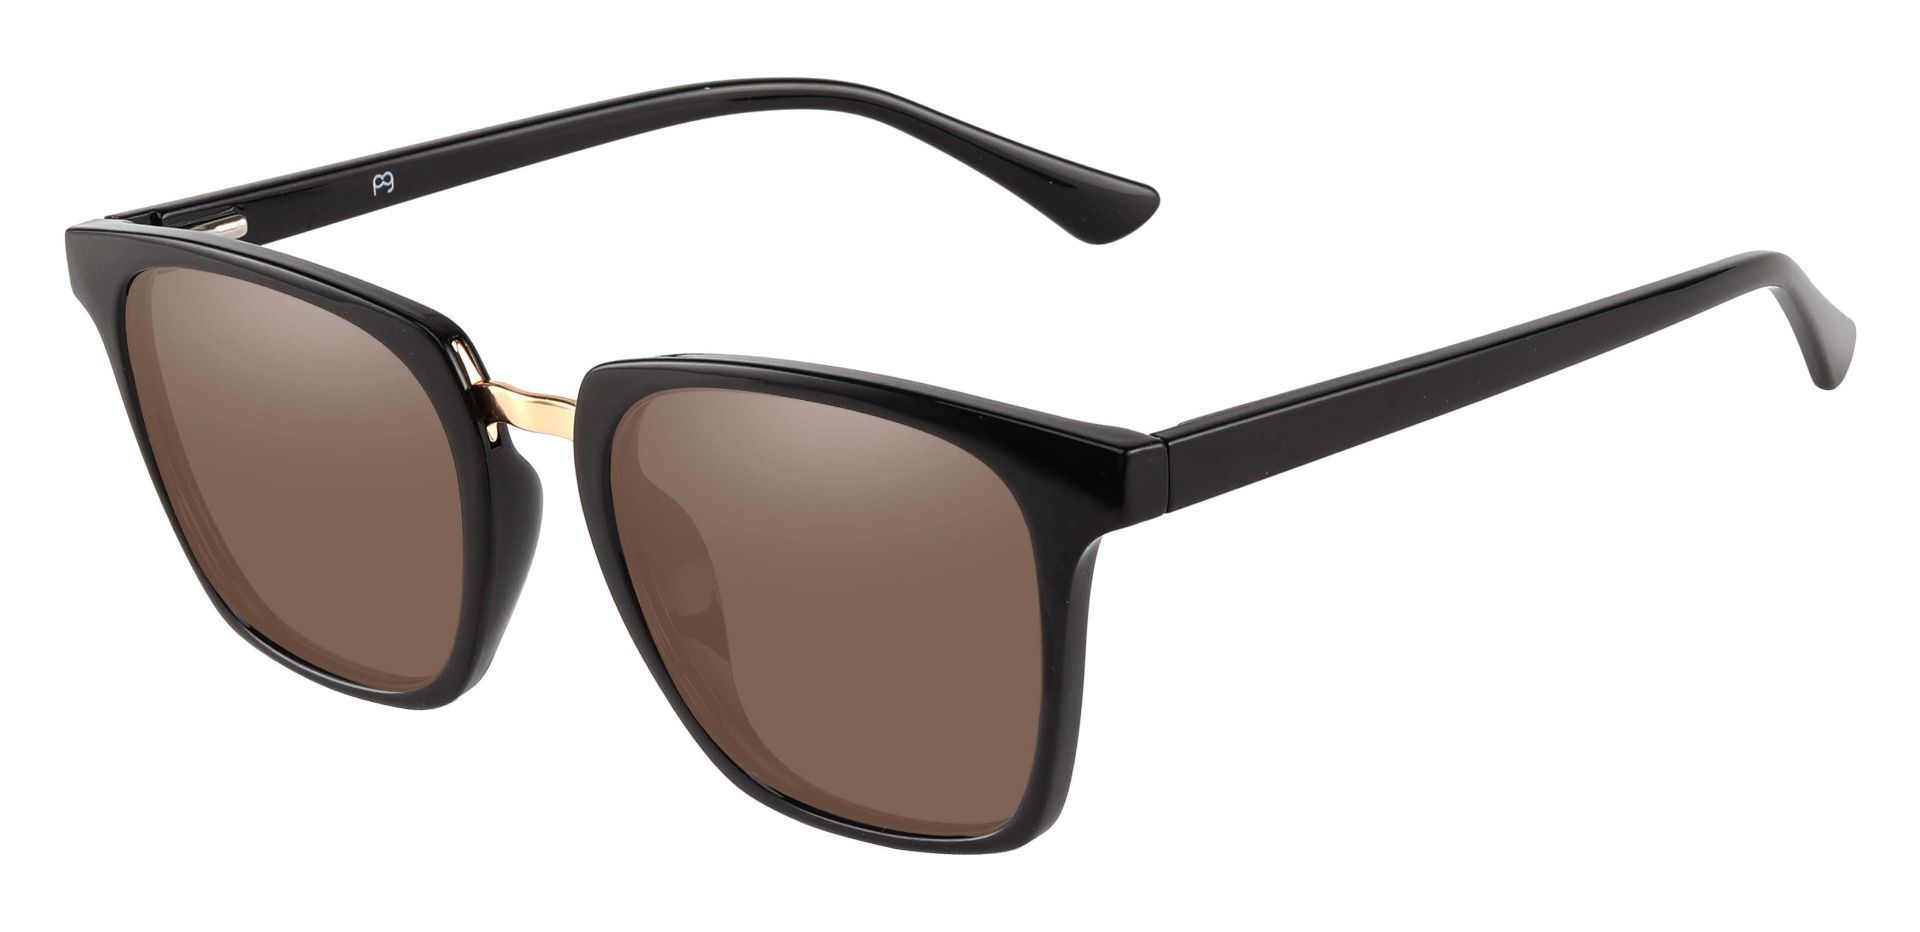 Delta Square Non-Rx Sunglasses - Black Frame With Brown Lenses